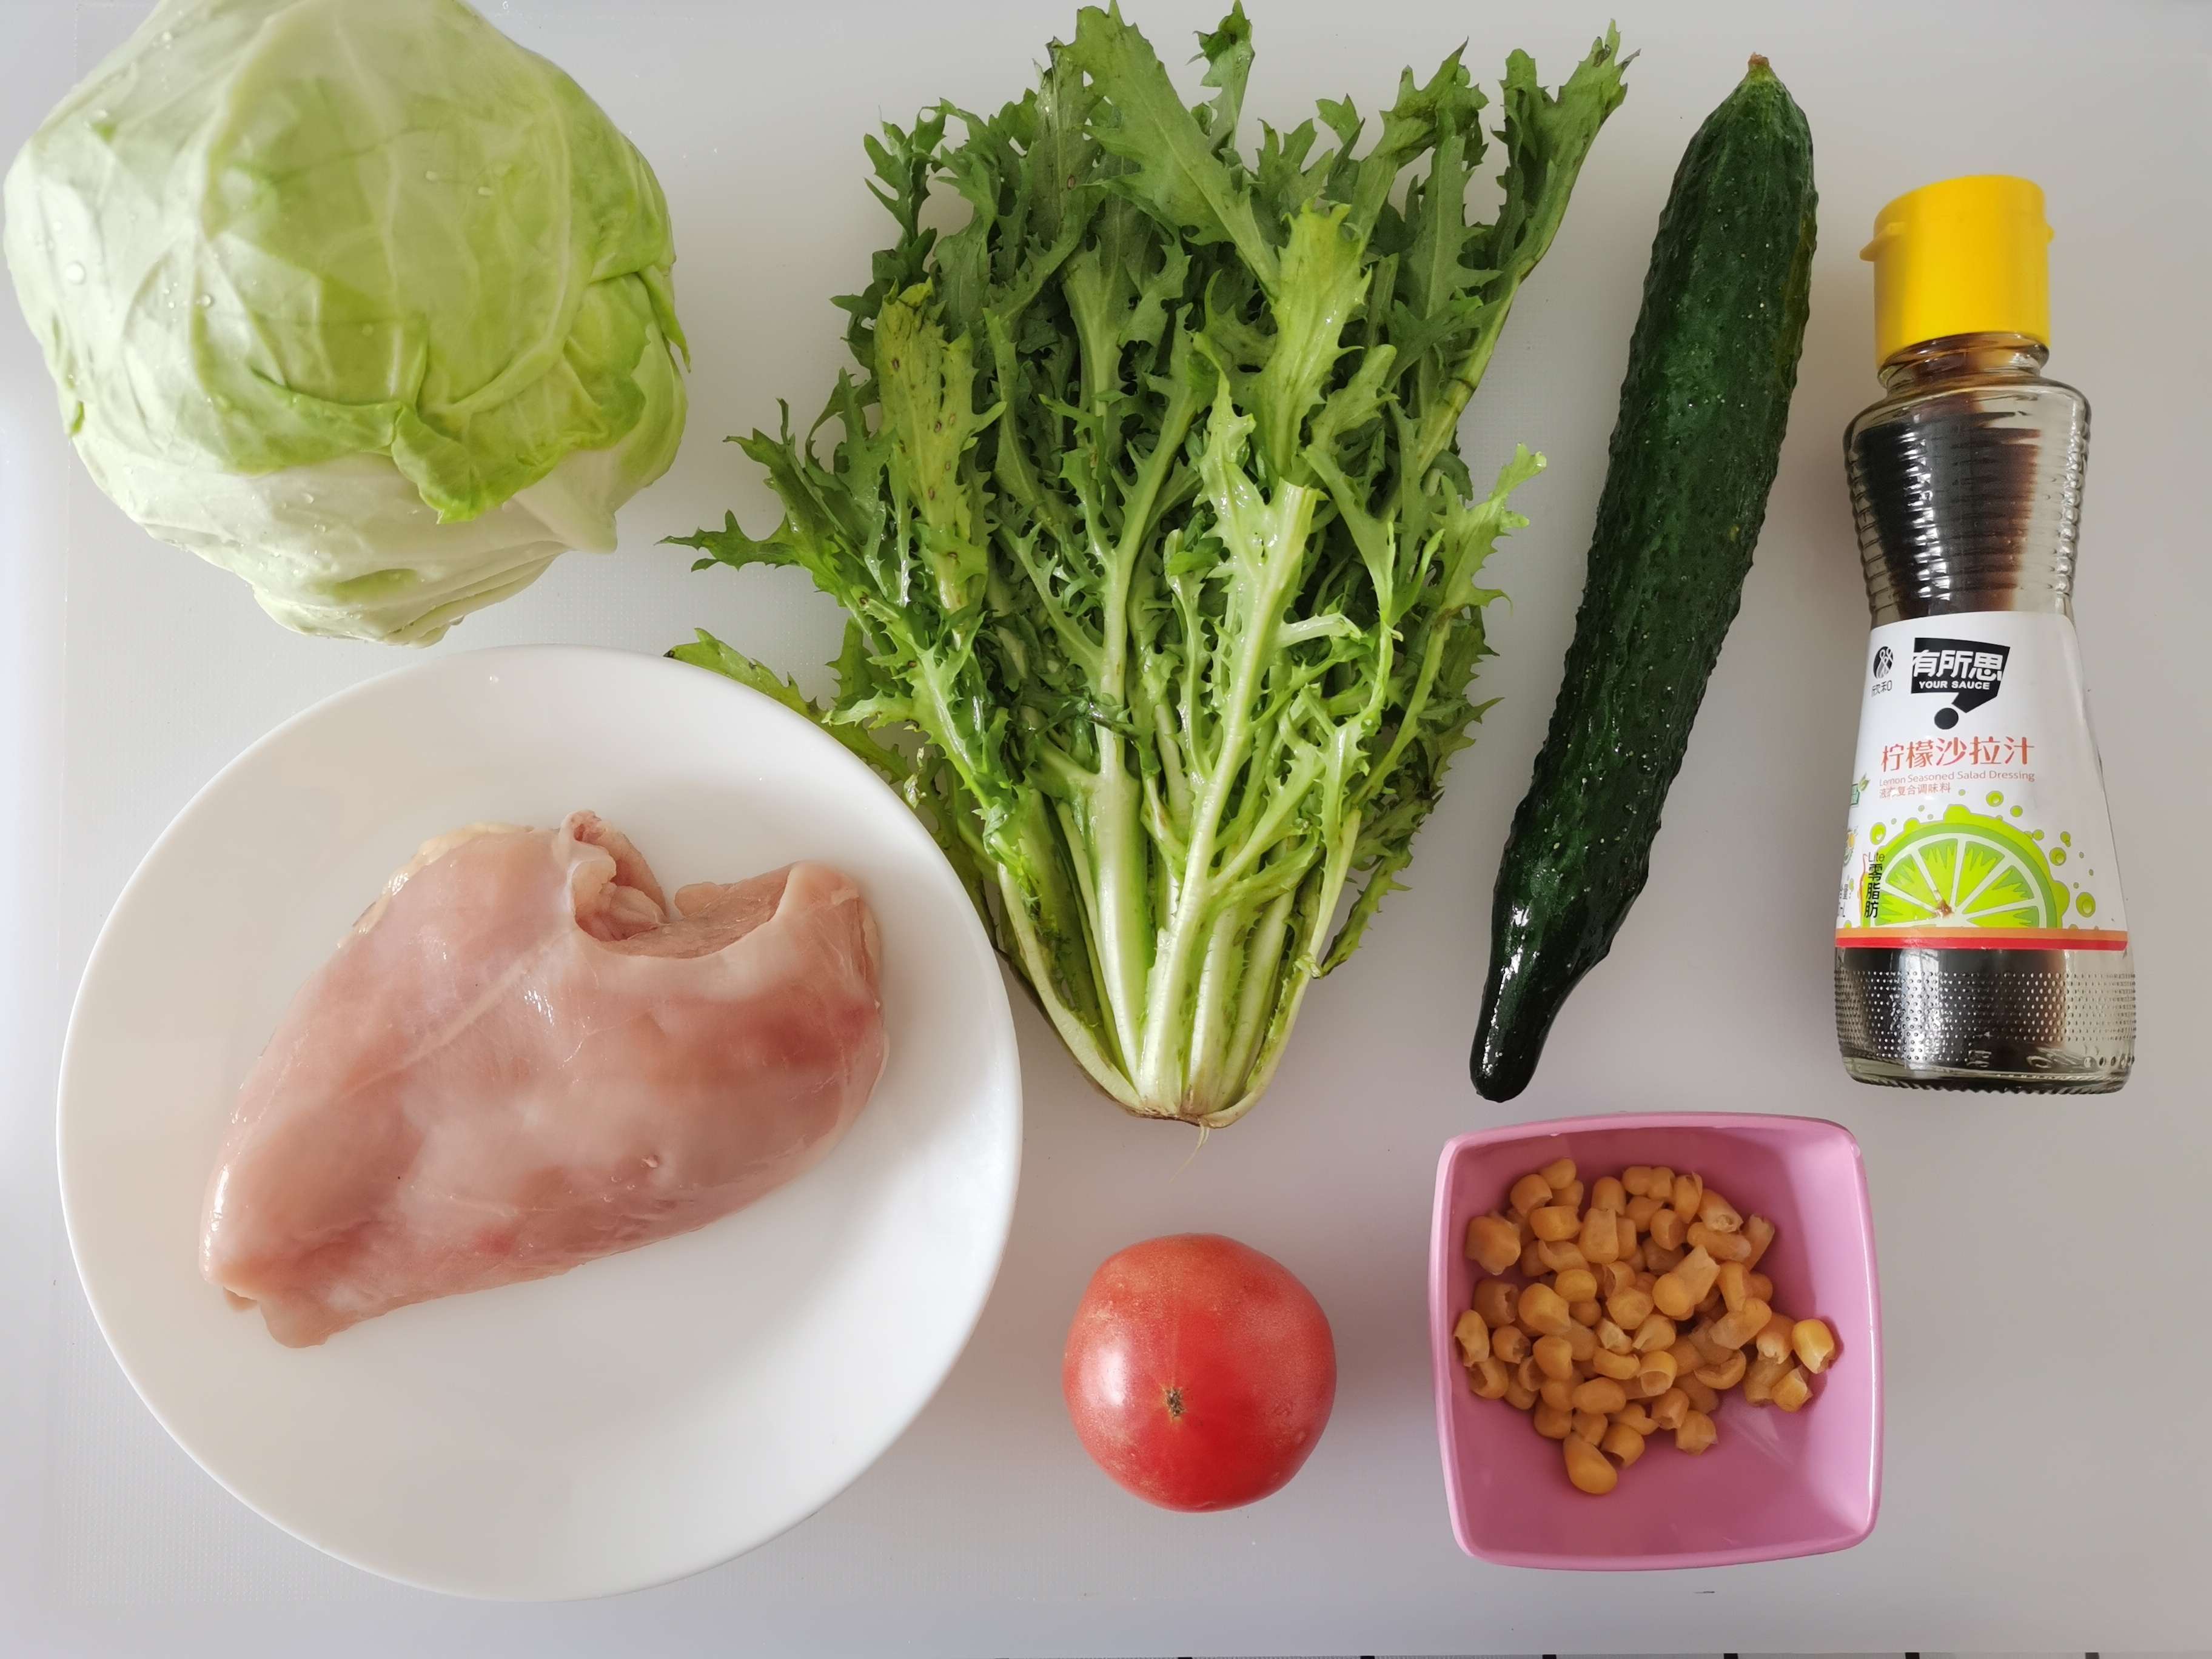 Chicken Breast Quinoa Salad recipe